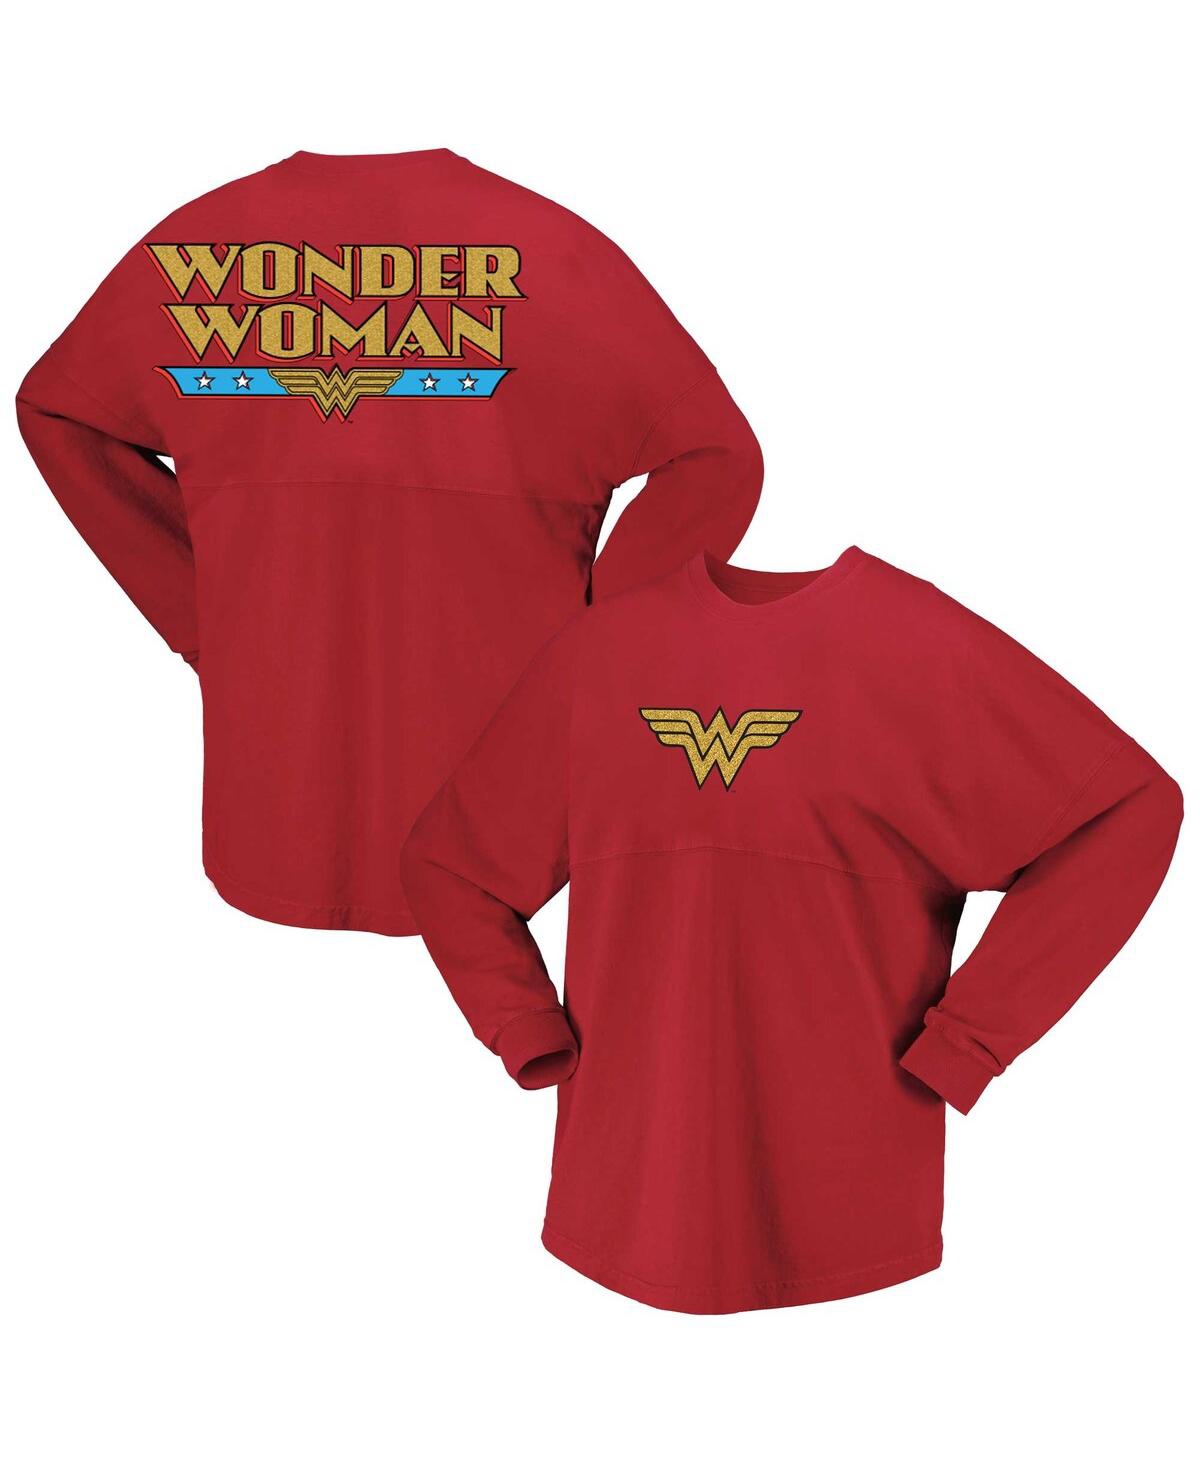 Shop Spirit Jersey Women's Red Wonder Woman Original Long Sleeve T-shirt